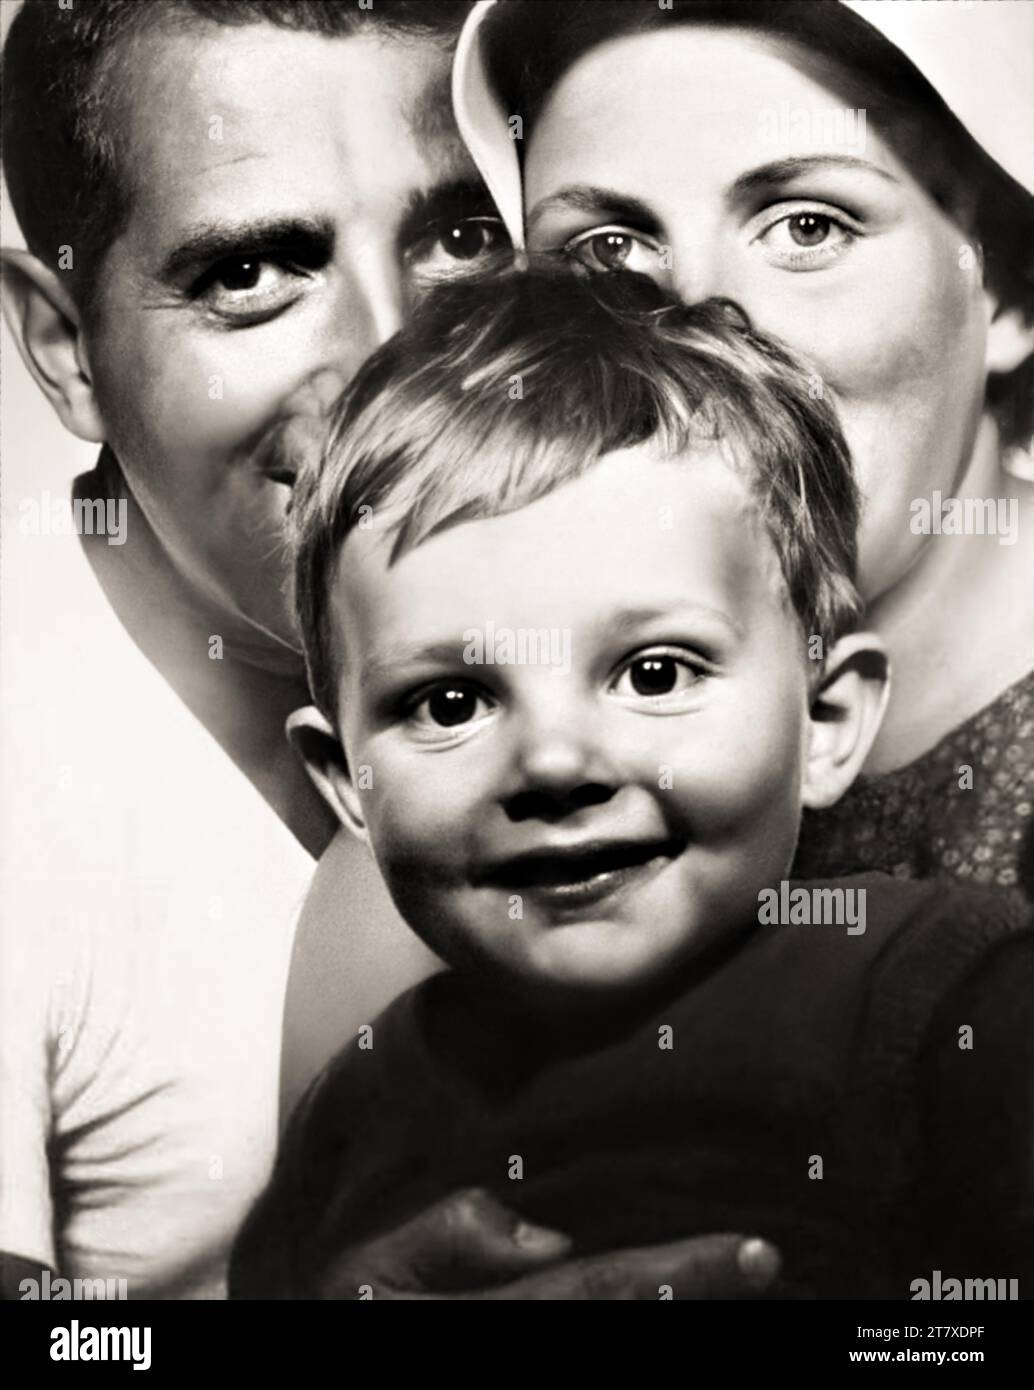 1967 c., Firenze , ITALY: The italian movie director  LEONARDO PIERACCIONI ( born 17 february 1965 ) when was a young boy aged 2 with his mother CARLA NELLI ( born 15 march 1940 ) and father OSVALDO ( 1934 - 2015 ). Unknown photographer .- HISTORY - FOTO STORICHE - REGISTA CINEMATOGRAFICO - MOVIE - CINEMA - PORTRAIT - RITRATTO - personalità da bambino bambini da giovani giovane - personality personalities when was young - INFANZIA - CHILDHOOD - baby - madre - mamma - padre - papà - PARENTS - GENITORI - FAMIGLIA - FAMILY - ITALIA - FOTOTESSERA - FOTO TESSERA - PHOTO BOOTH - photo-booth --- ARCH Stock Photo